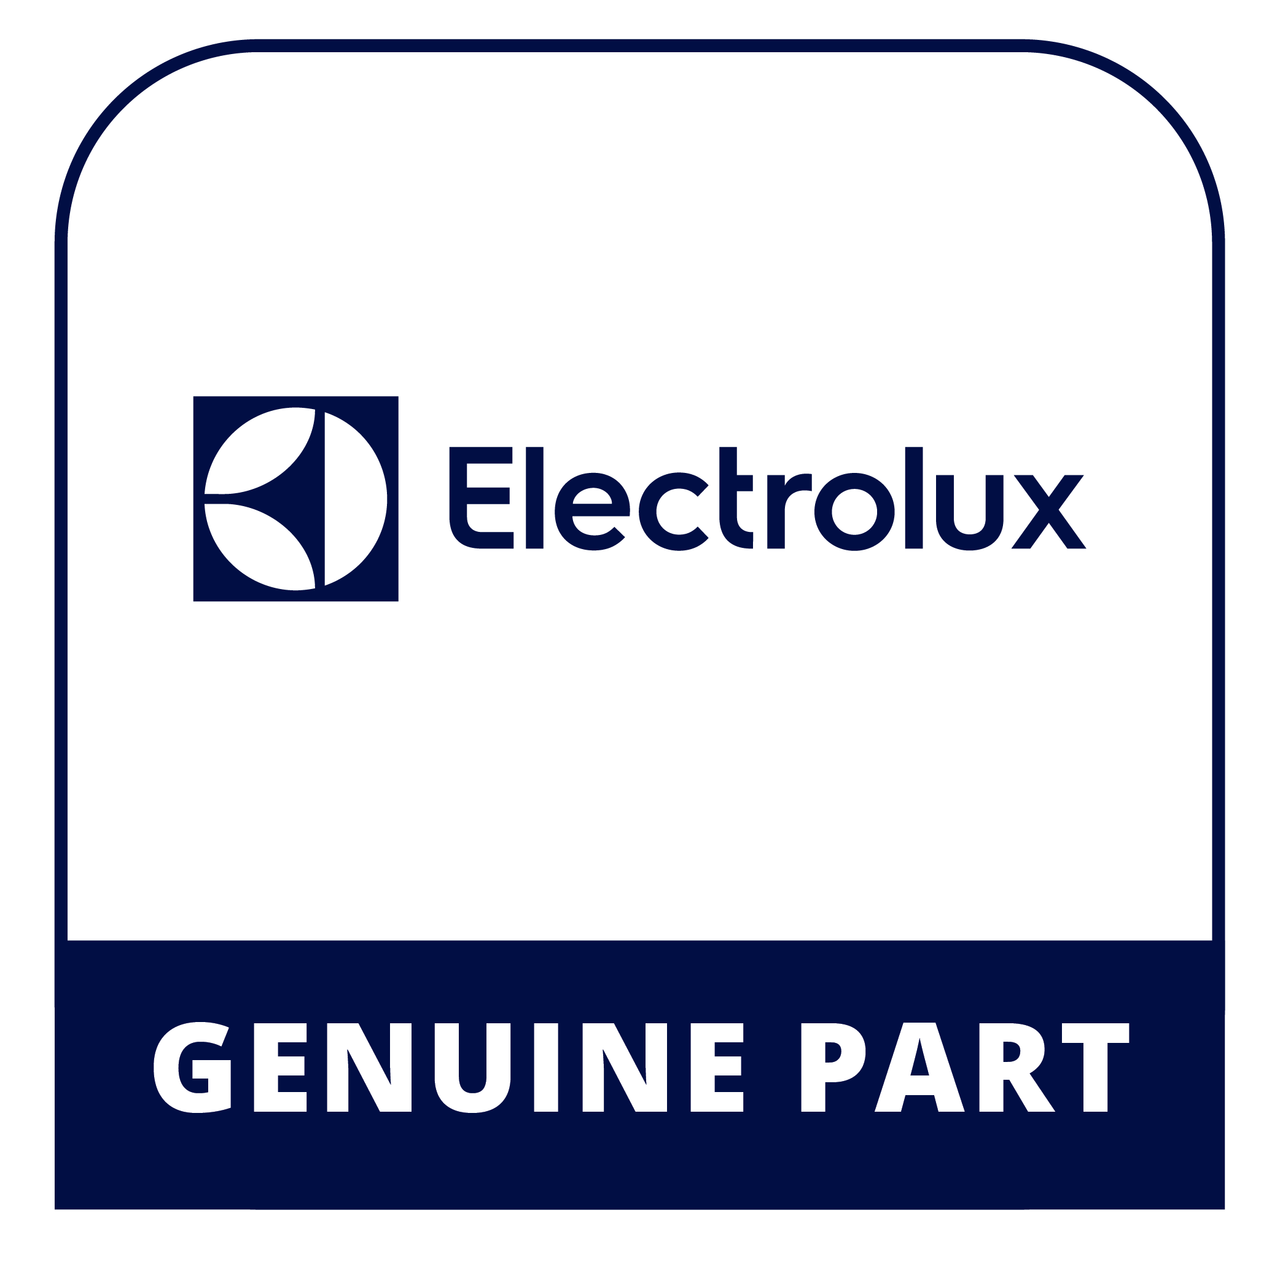 Frigidaire - Electrolux 134762000 - Switch - Genuine Electrolux Part